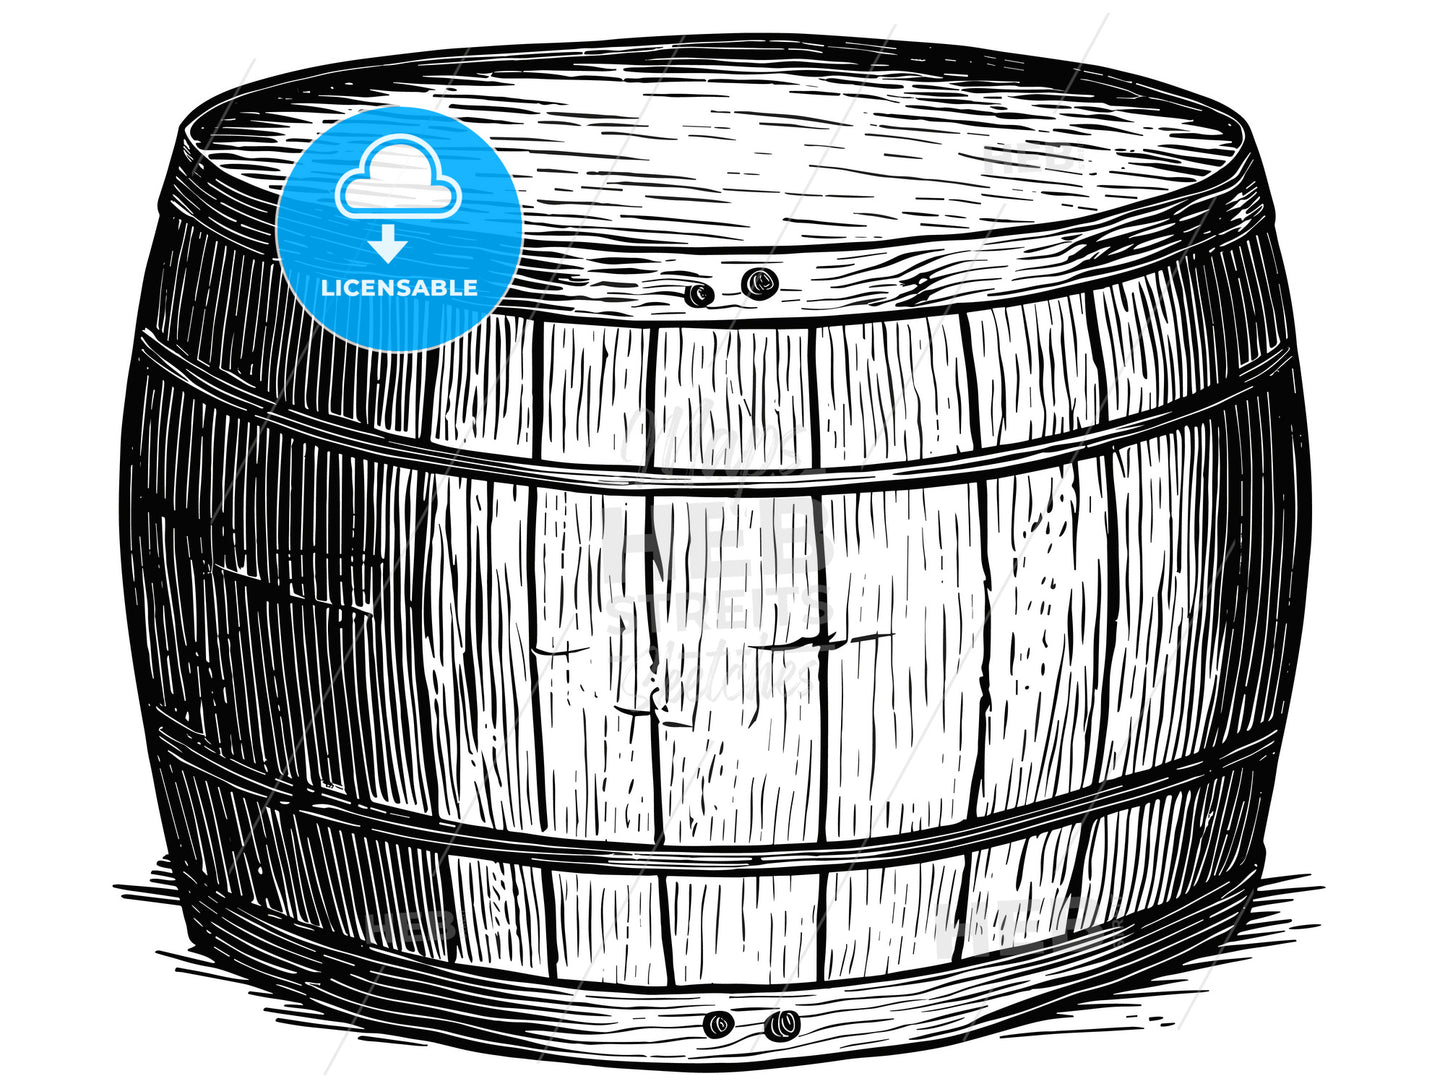 woodcut of a beer barrel.